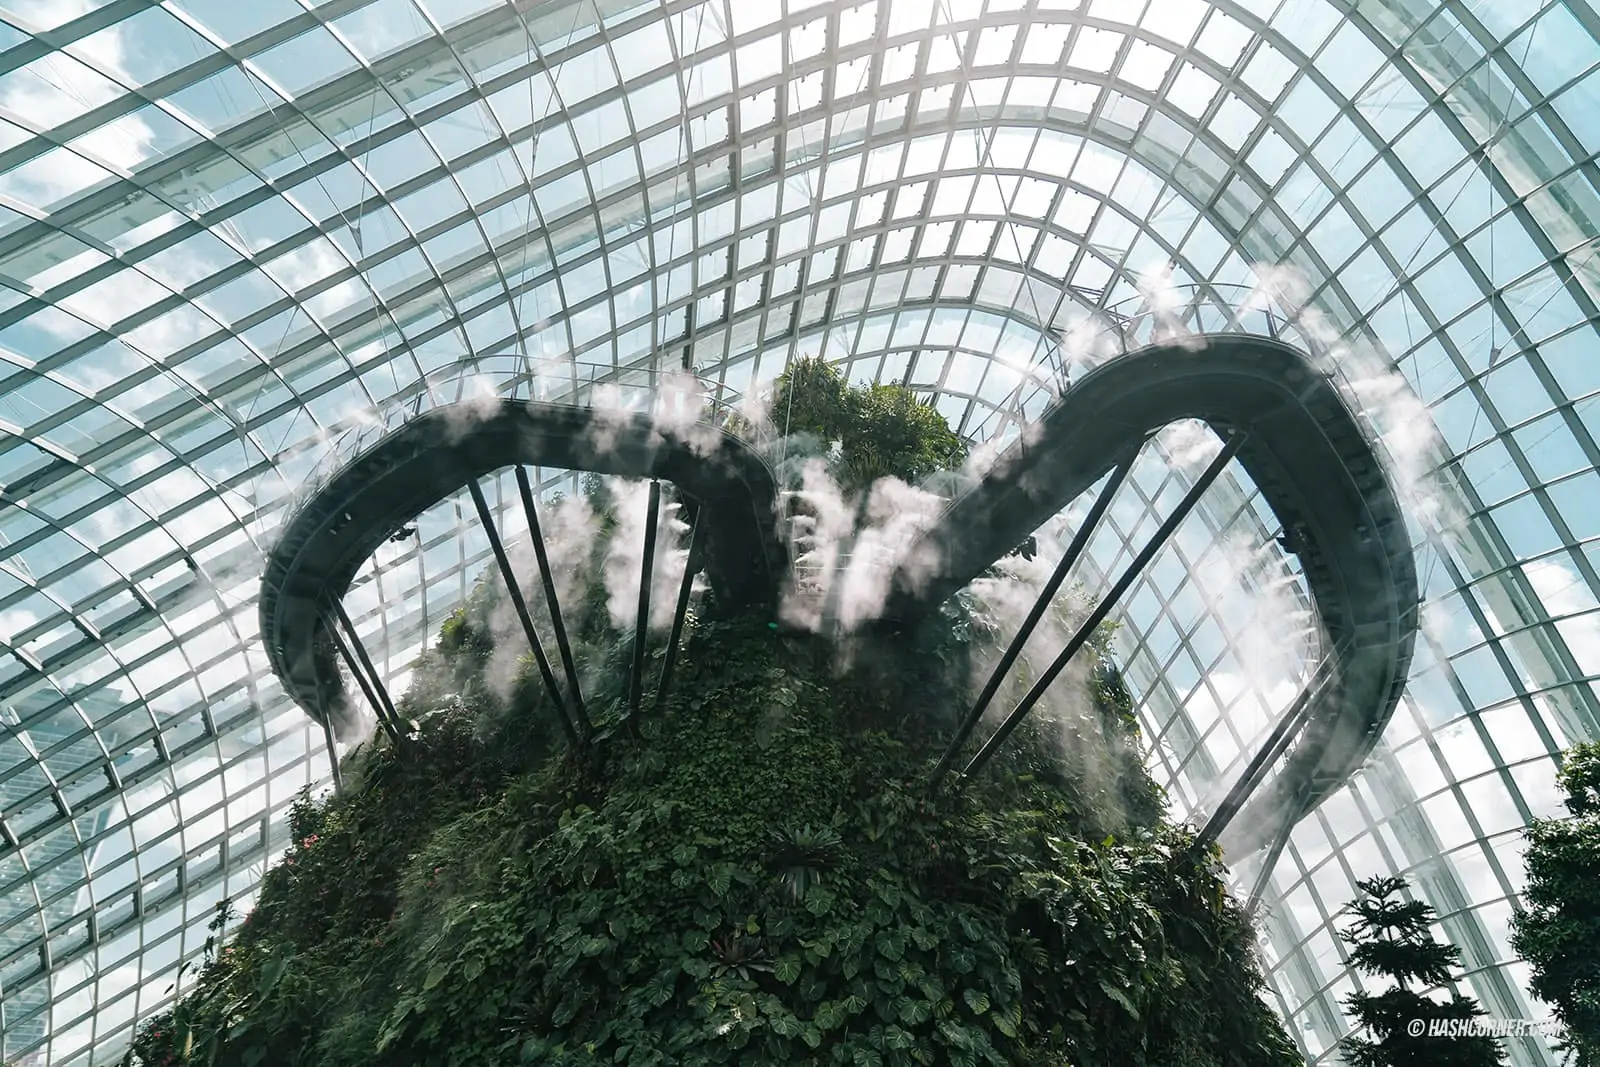 รีวิว Gardens By The Bay / Flower Dome และ Cloud Forest สิงคโปร์